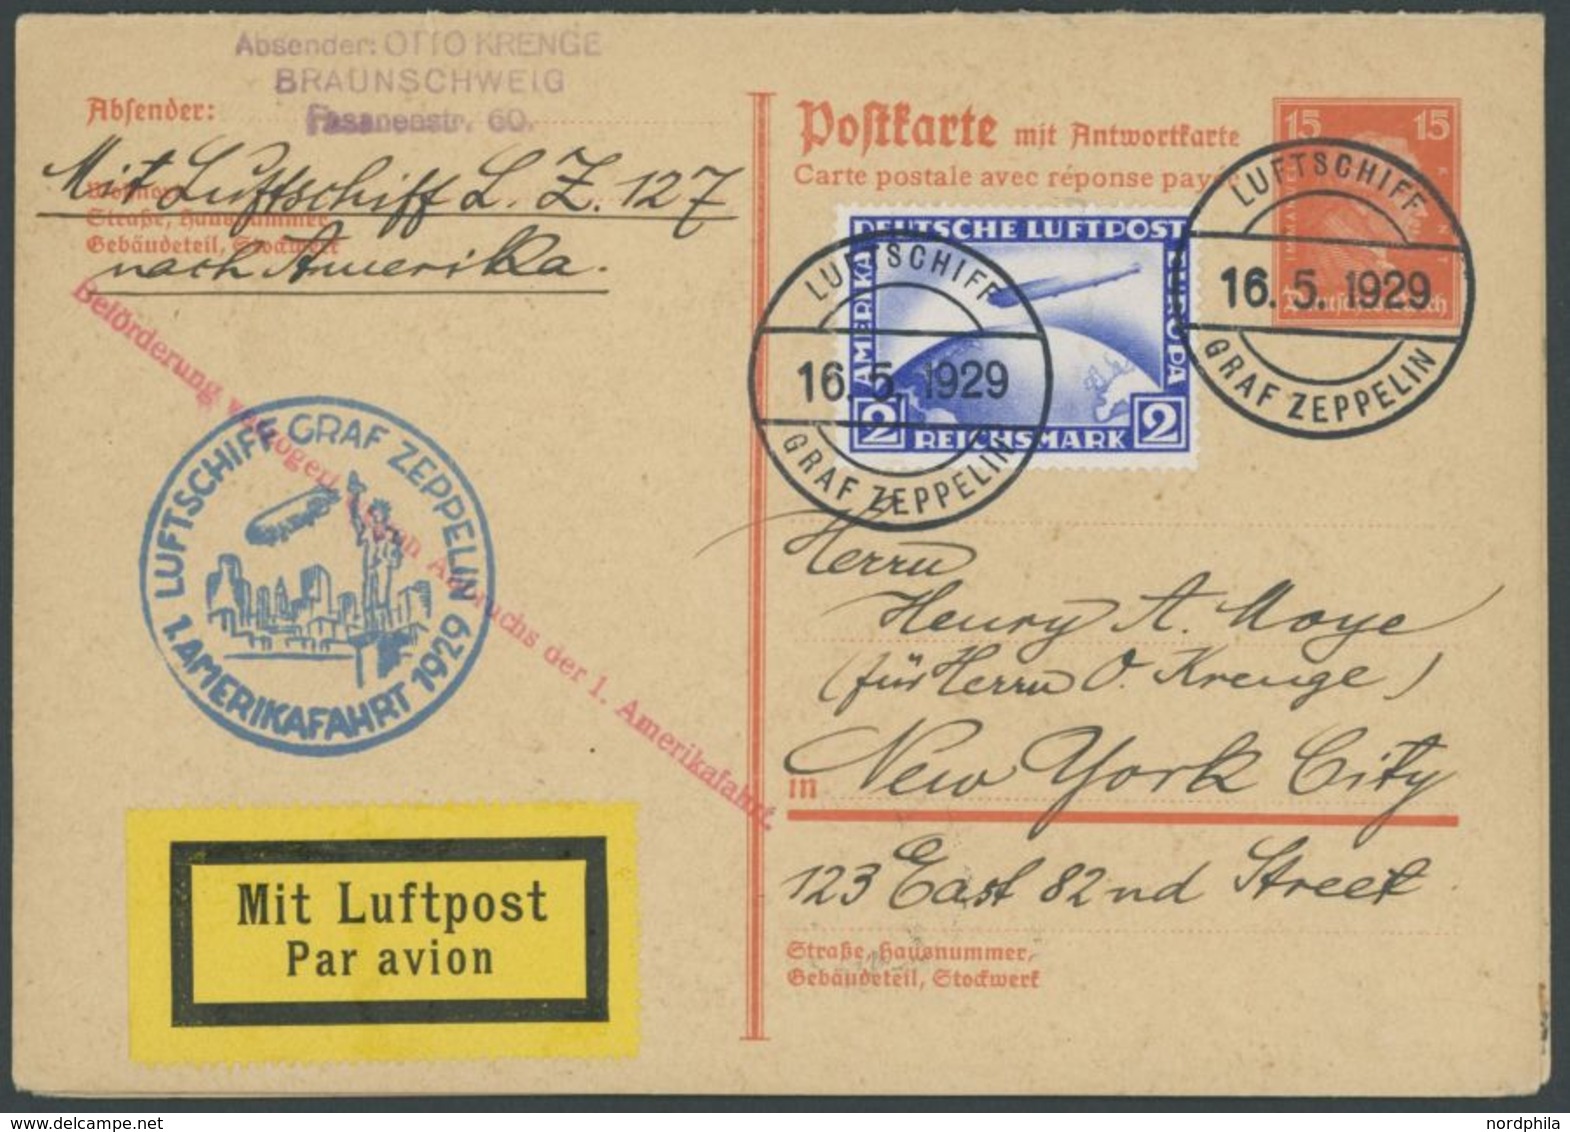 1929, Amerikafahrt, 15 Pf. Ganzsachenkarte (P 173) Als Bordpost Mit 2 RM, Verzögerungsstempel Auf Anhängender Karte Mit  - Luft- Und Zeppelinpost